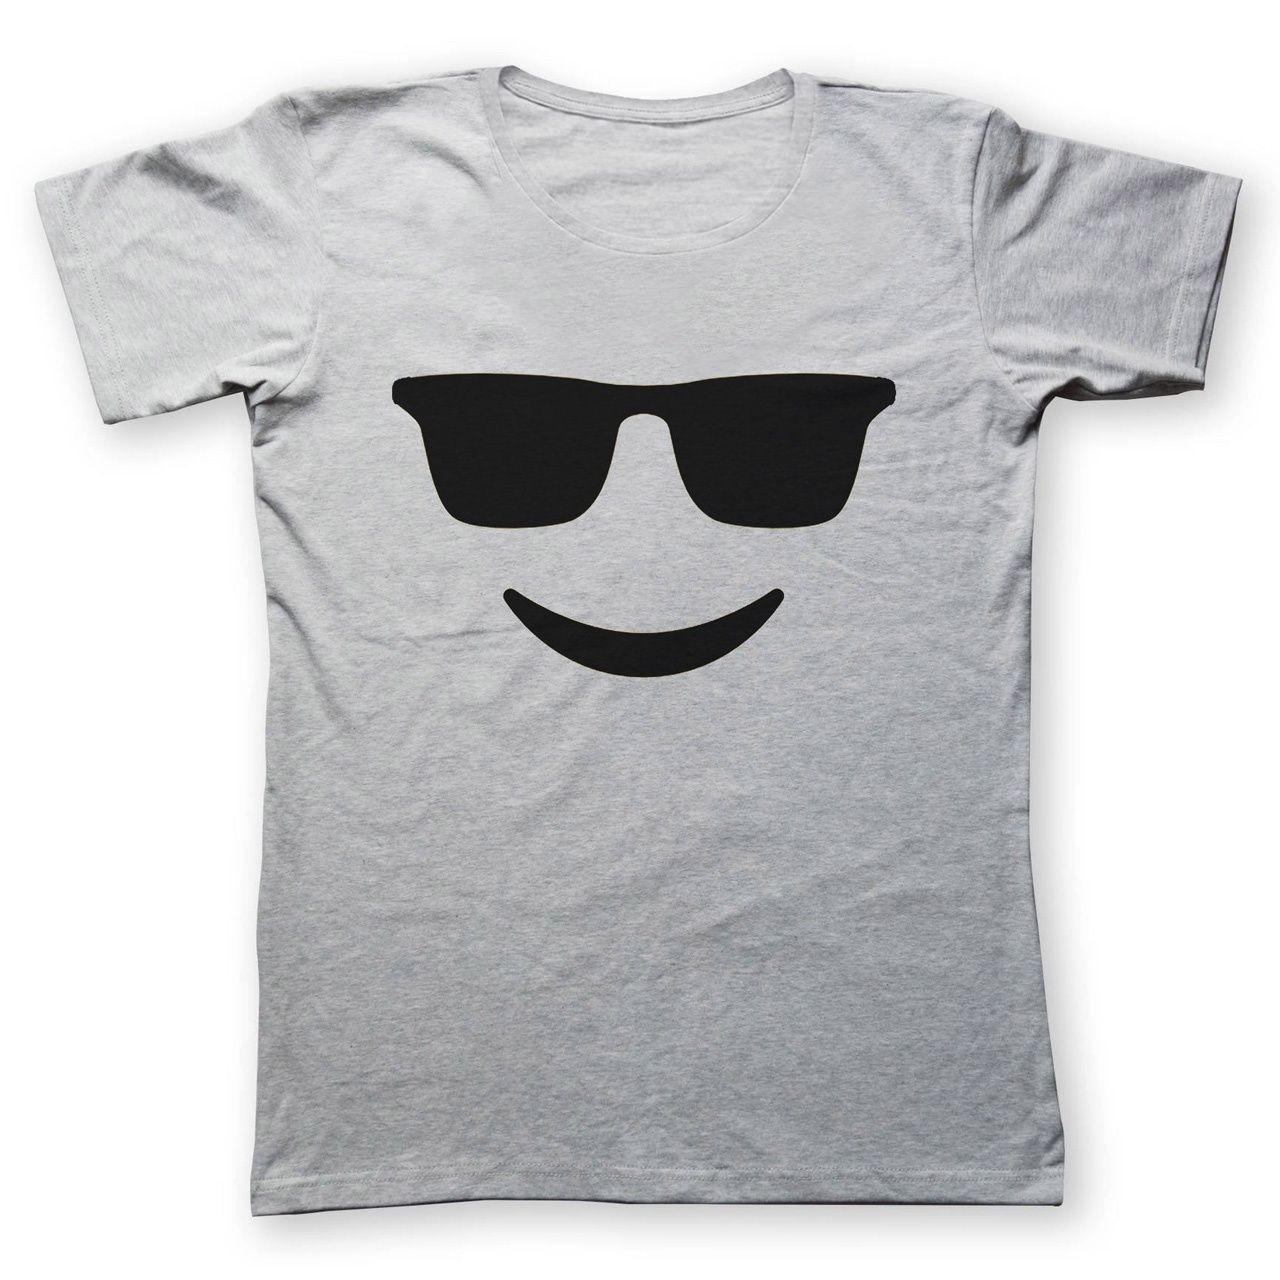 تی شرت زنانه به رسم طرح عینک کد 431 -  - 1